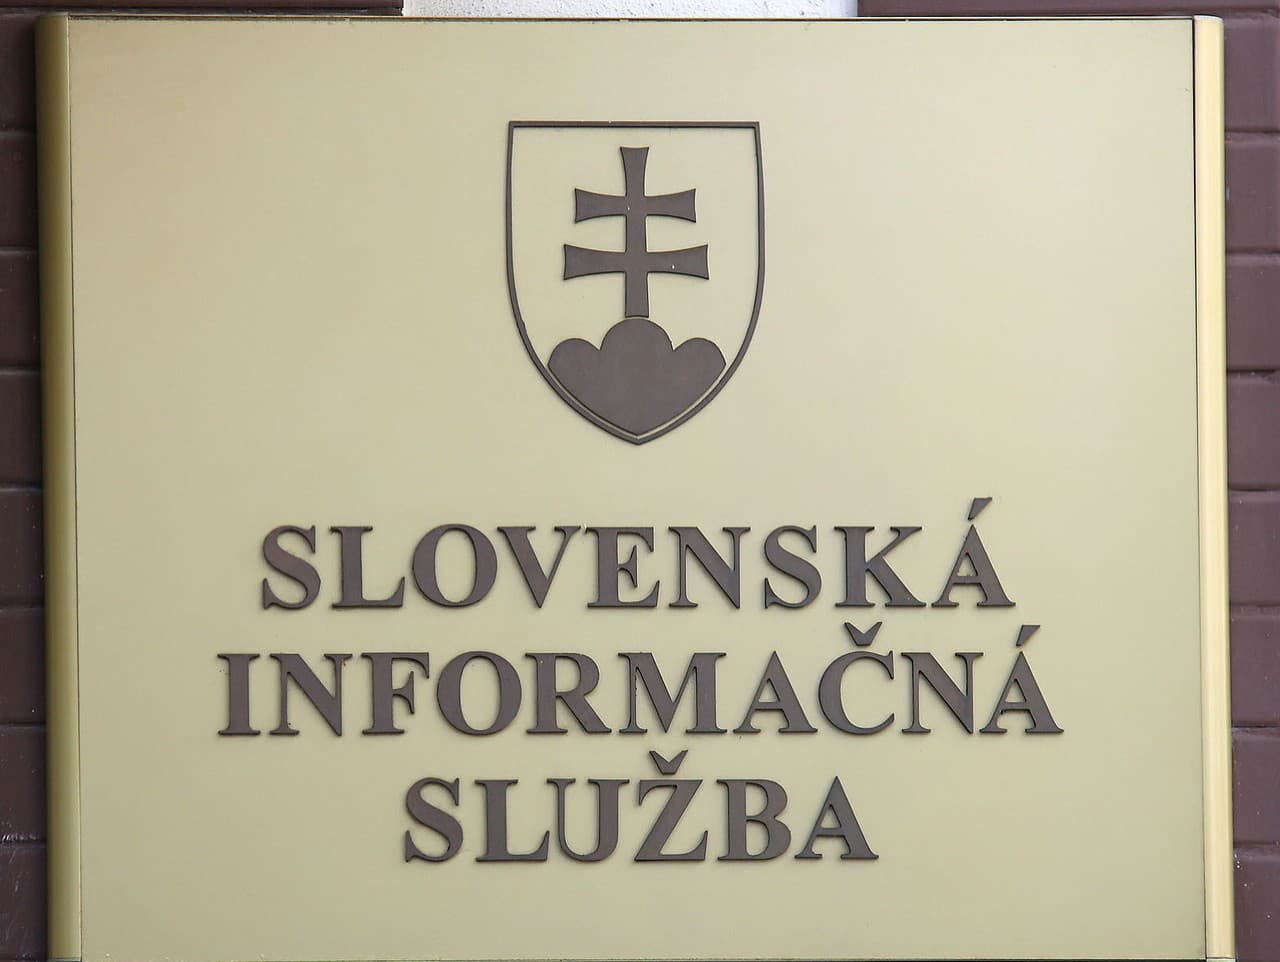 Slovenská informačná služba